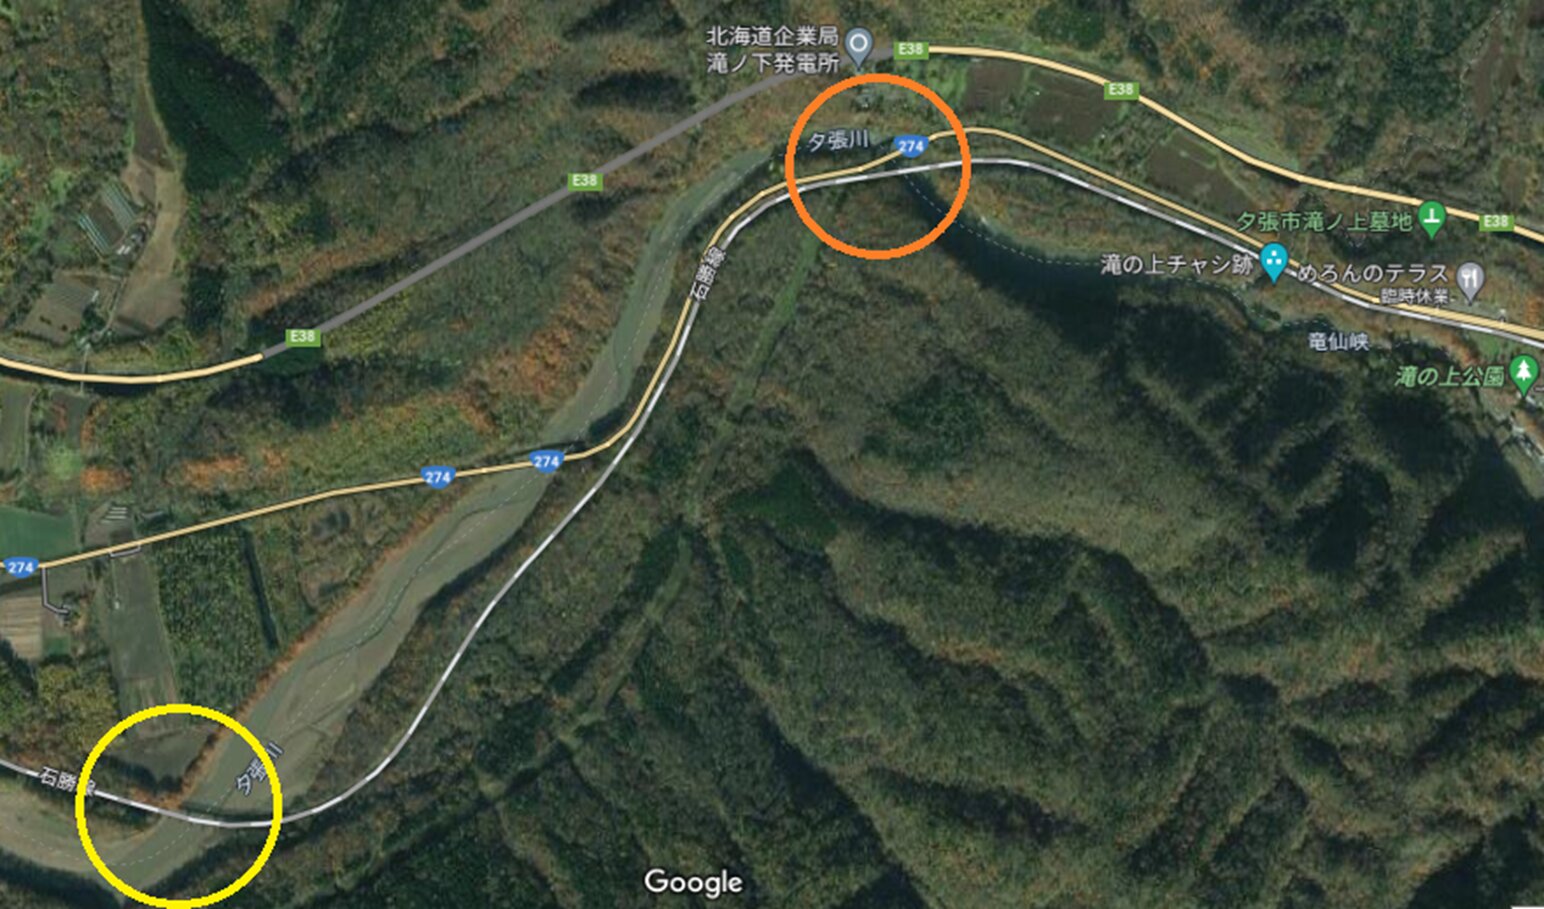 滝ノ下信号場ー滝ノ上駅・2番目と3番目の鉄橋位置　(C)Google